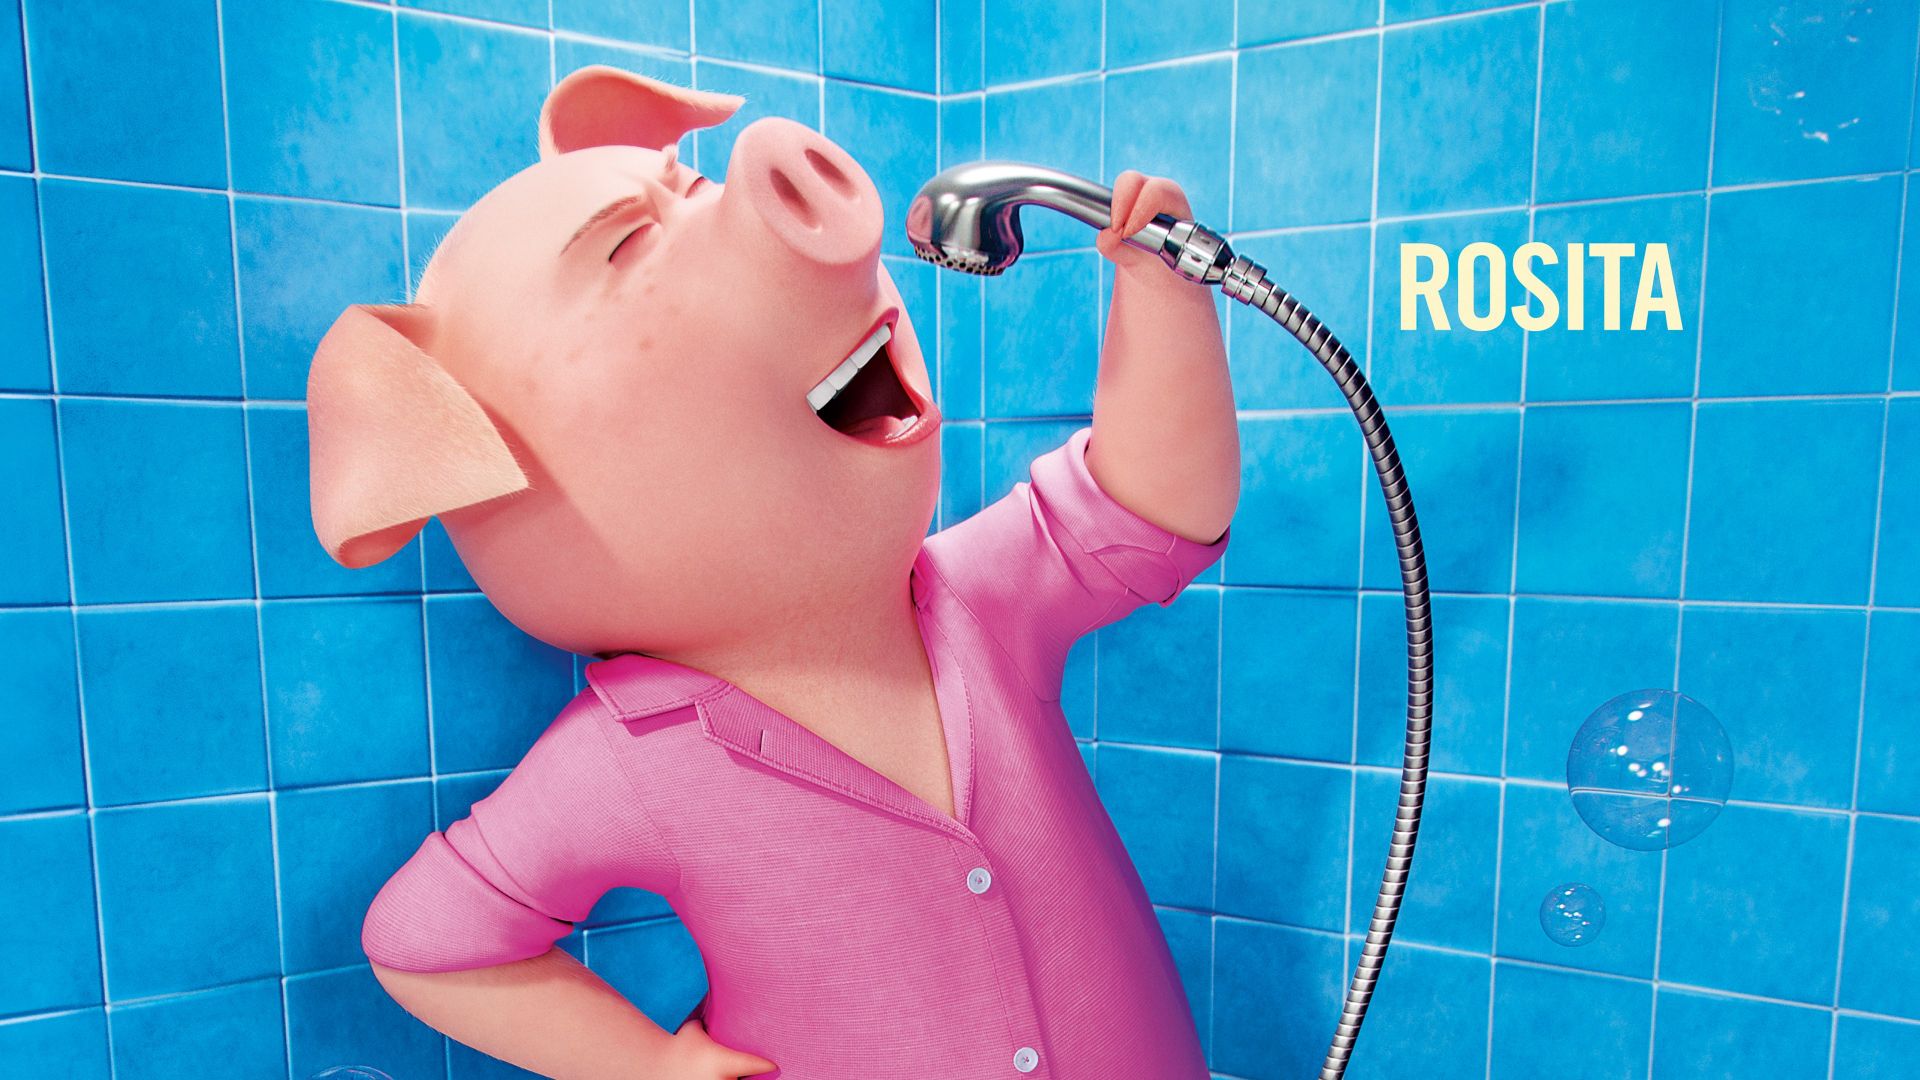 Путь к Славе, свинка, розита, лучшие мультфильмы 2016, Sing, pig, rosita, best animation movies of 2016 (horizontal)